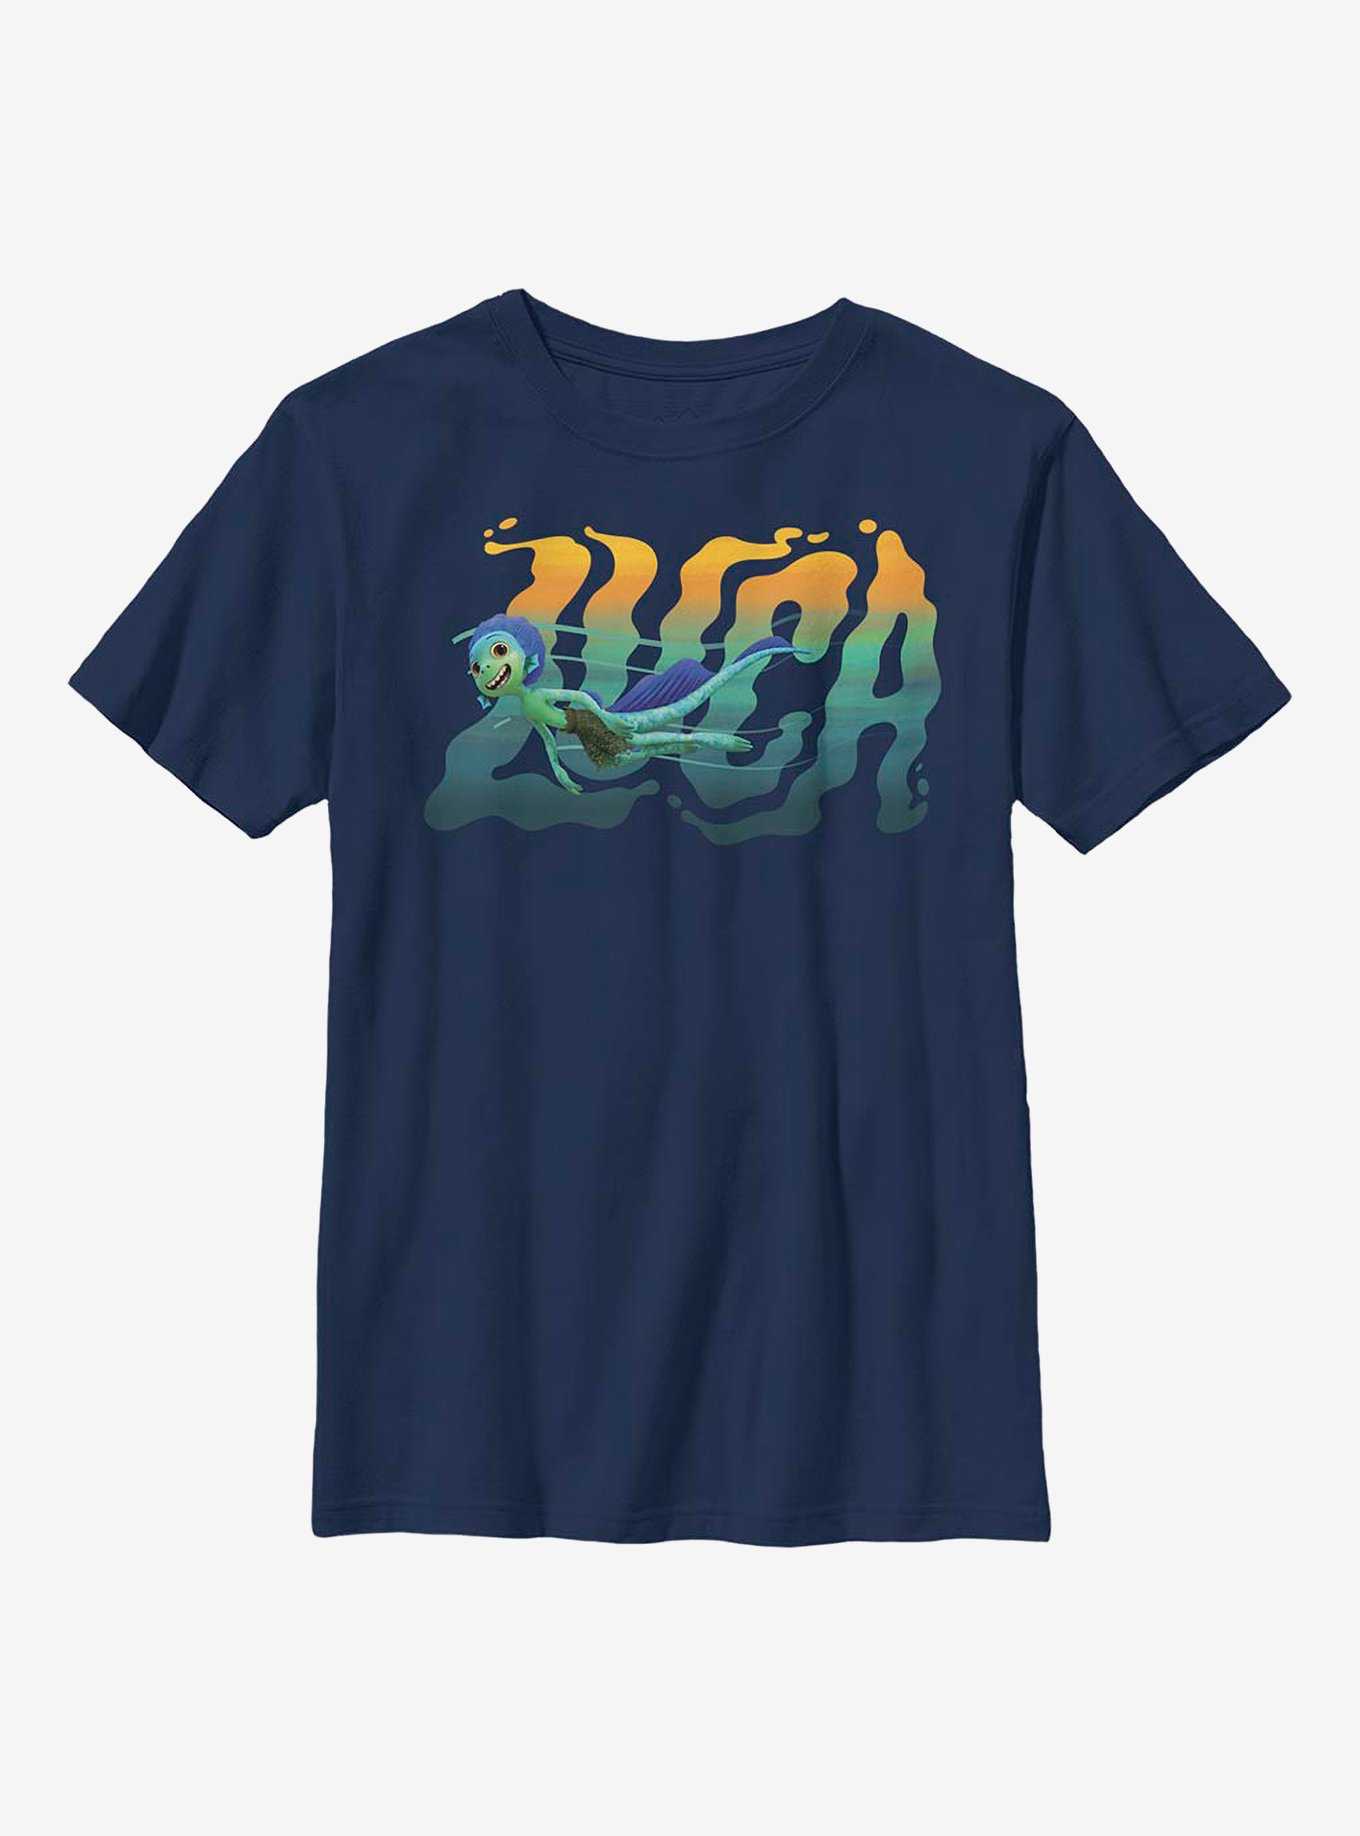 Disney Pixar Luca Swimming Youth T-Shirt, , hi-res